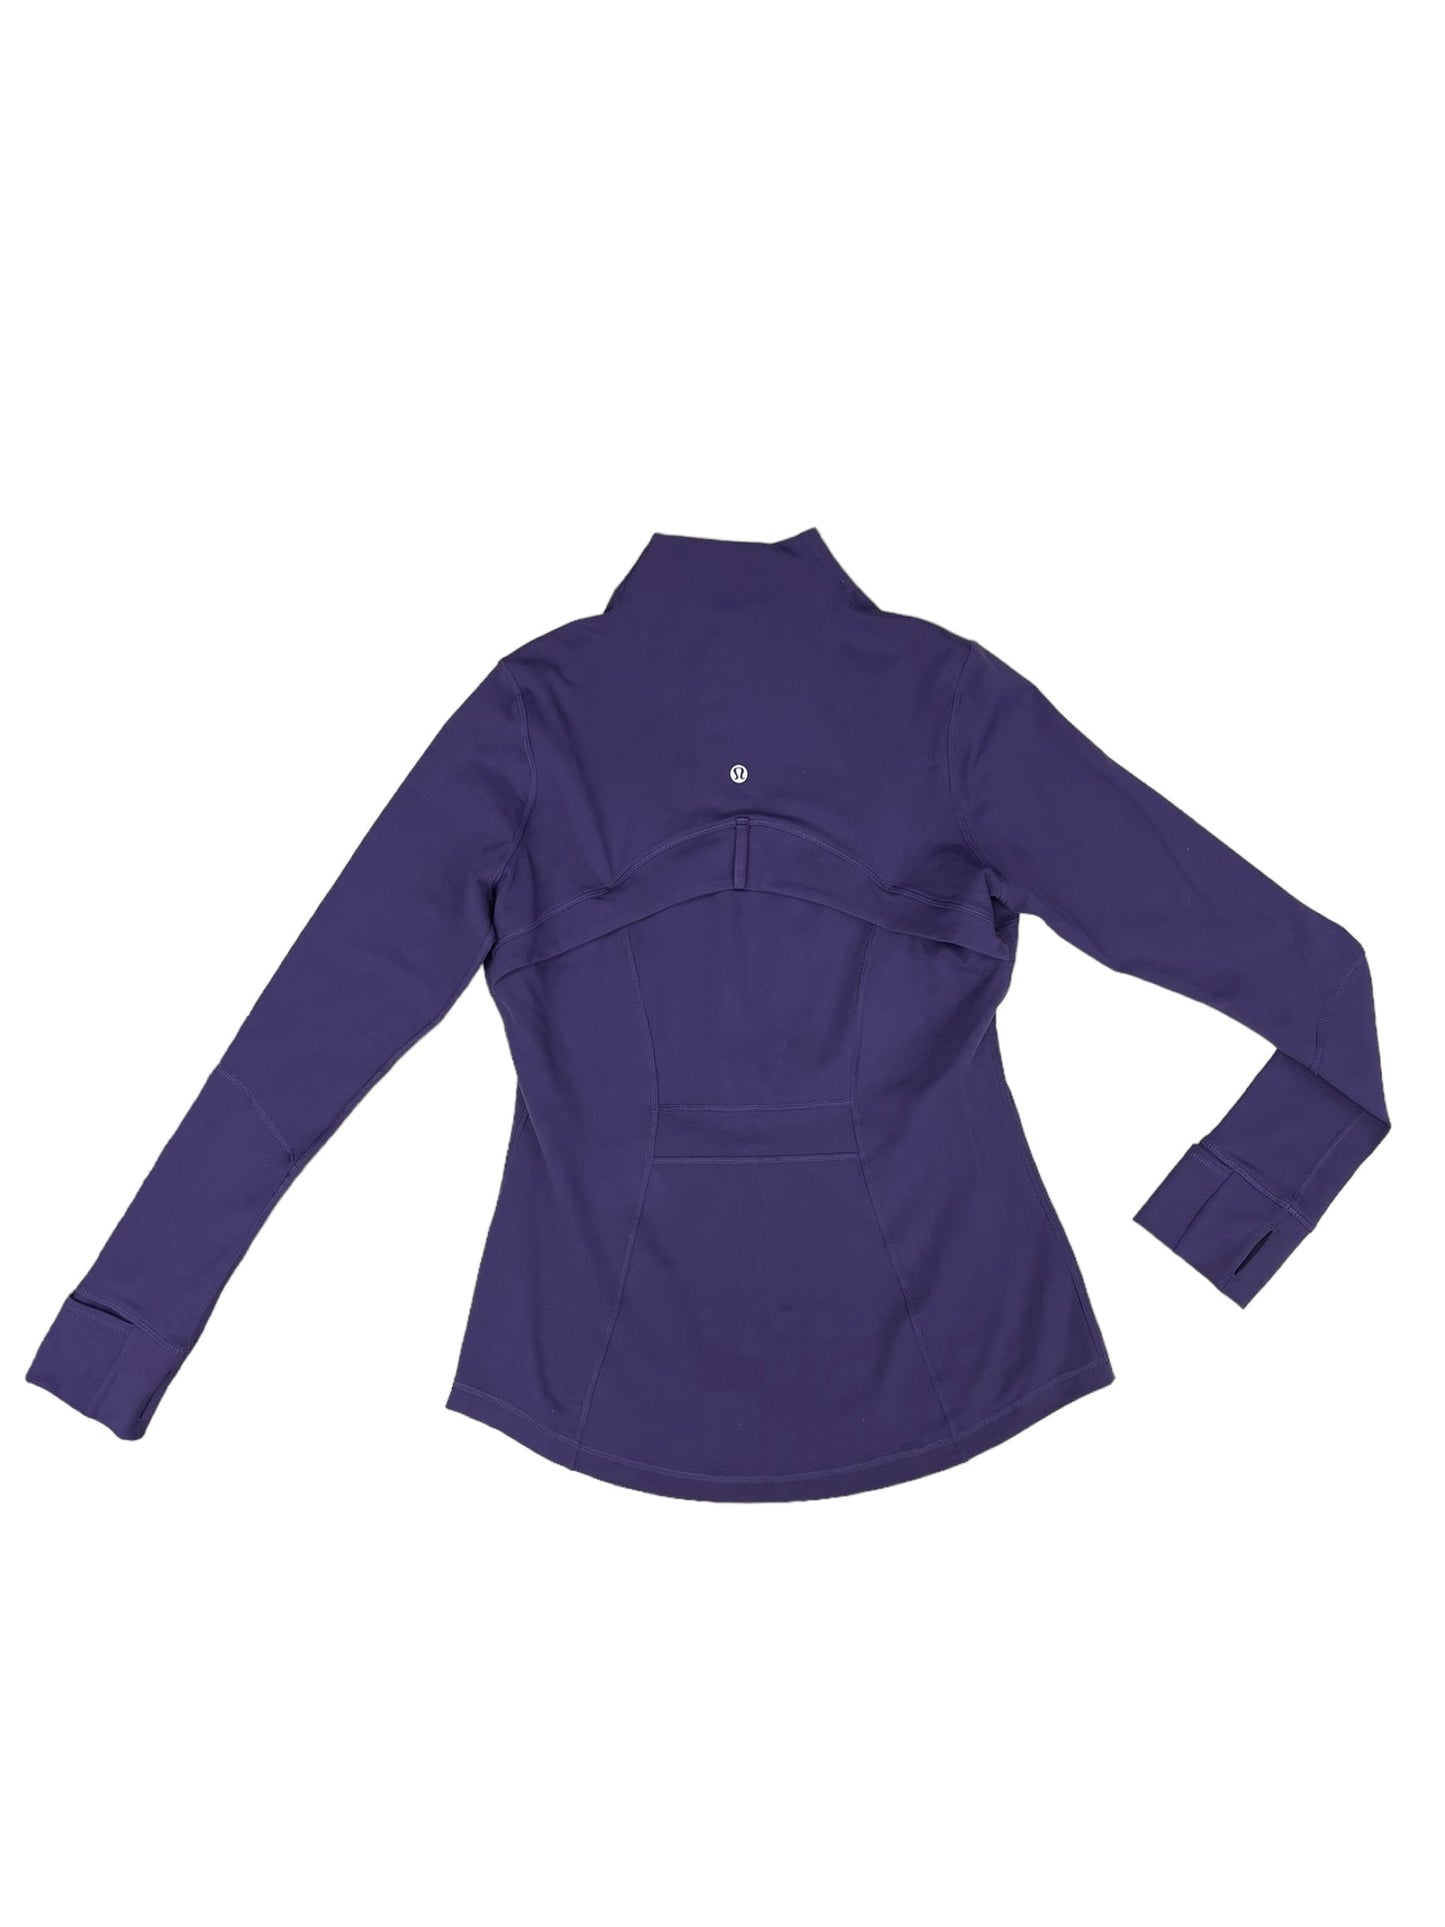 Purple Athletic Jacket Lululemon, Size 10